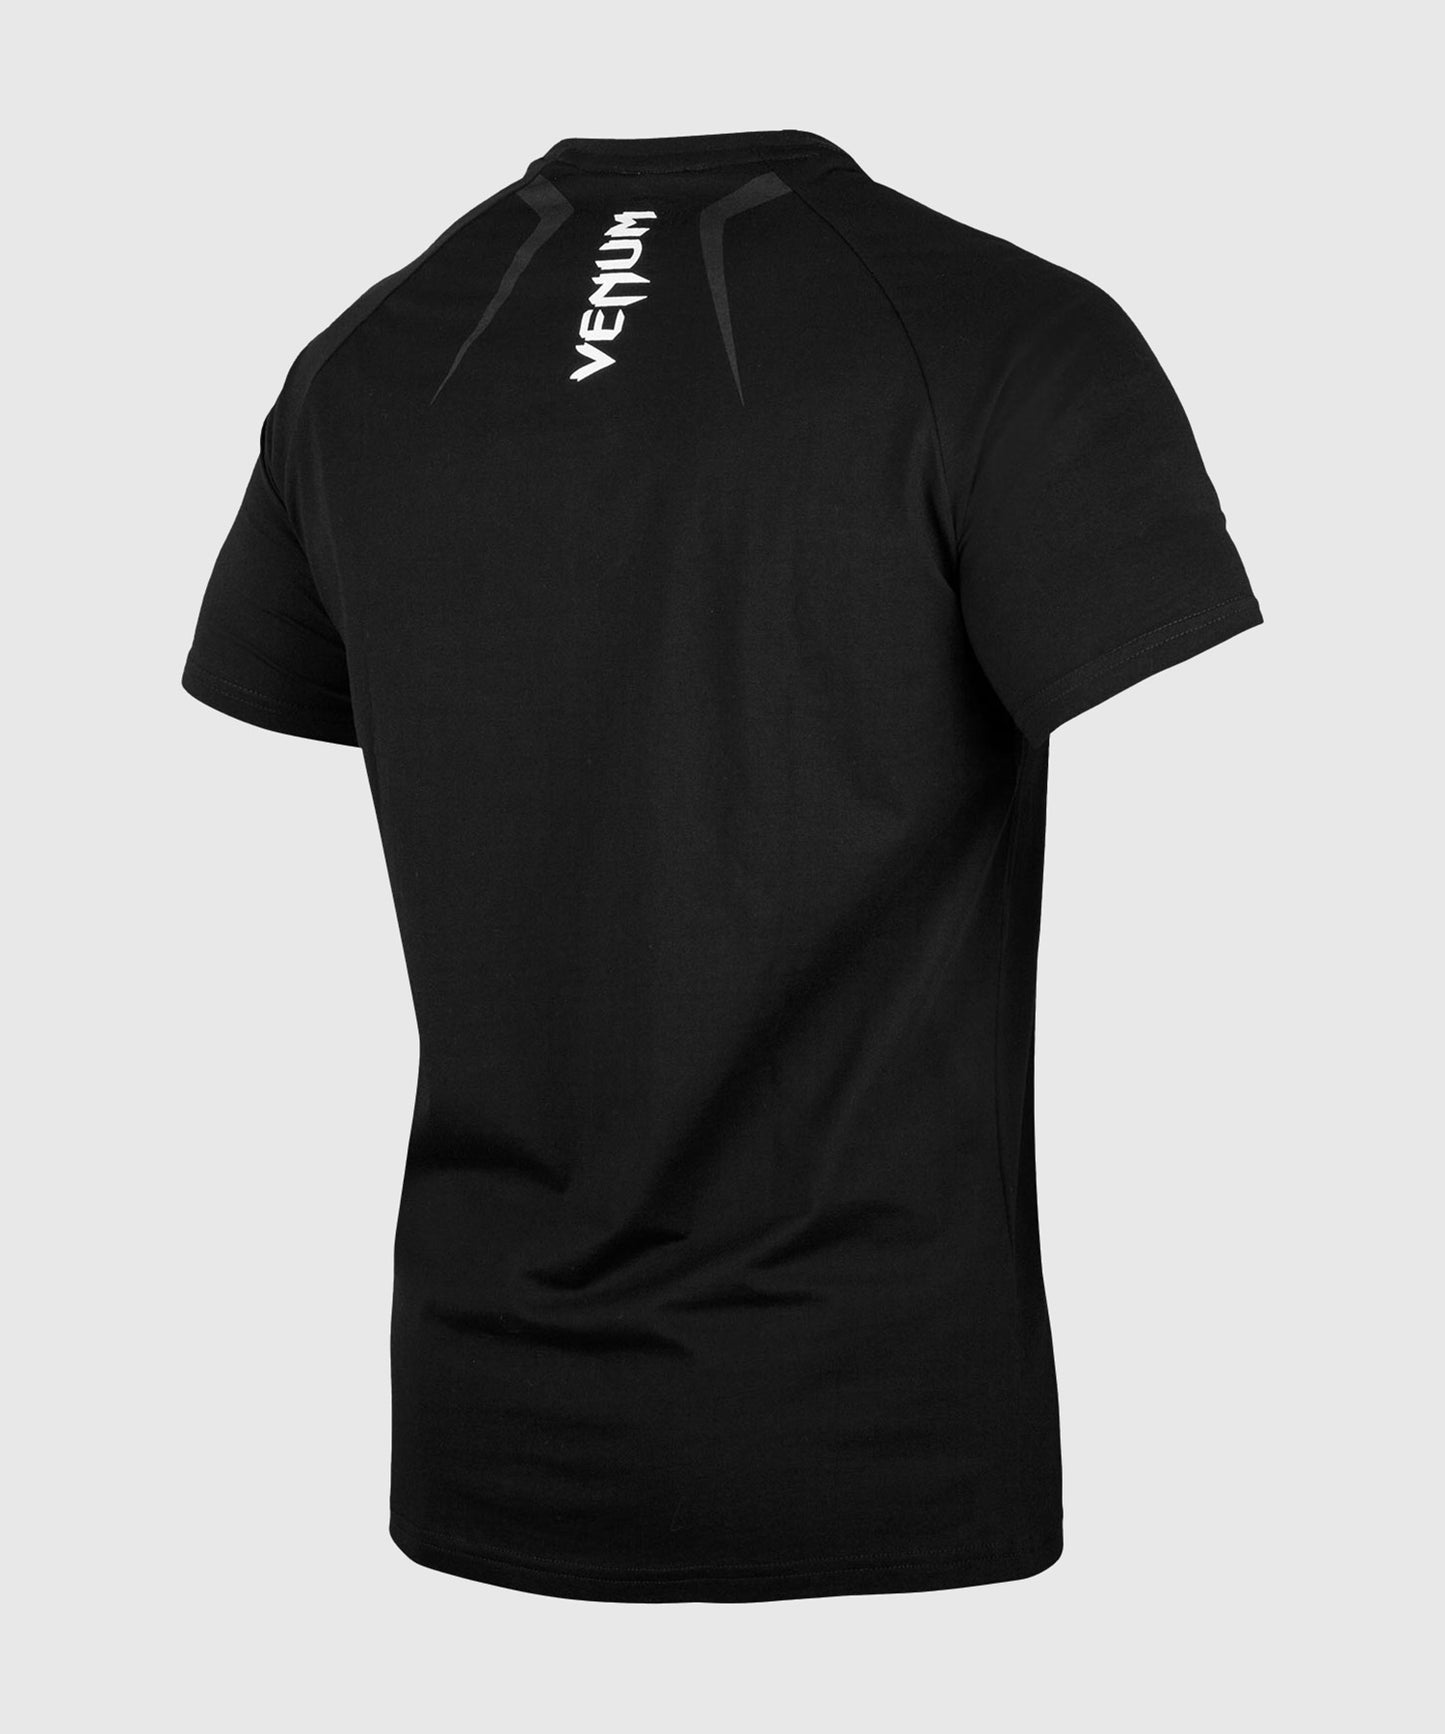 Venum Contender 4.0 T-Shirt - Schwarz/Grau-Weiß